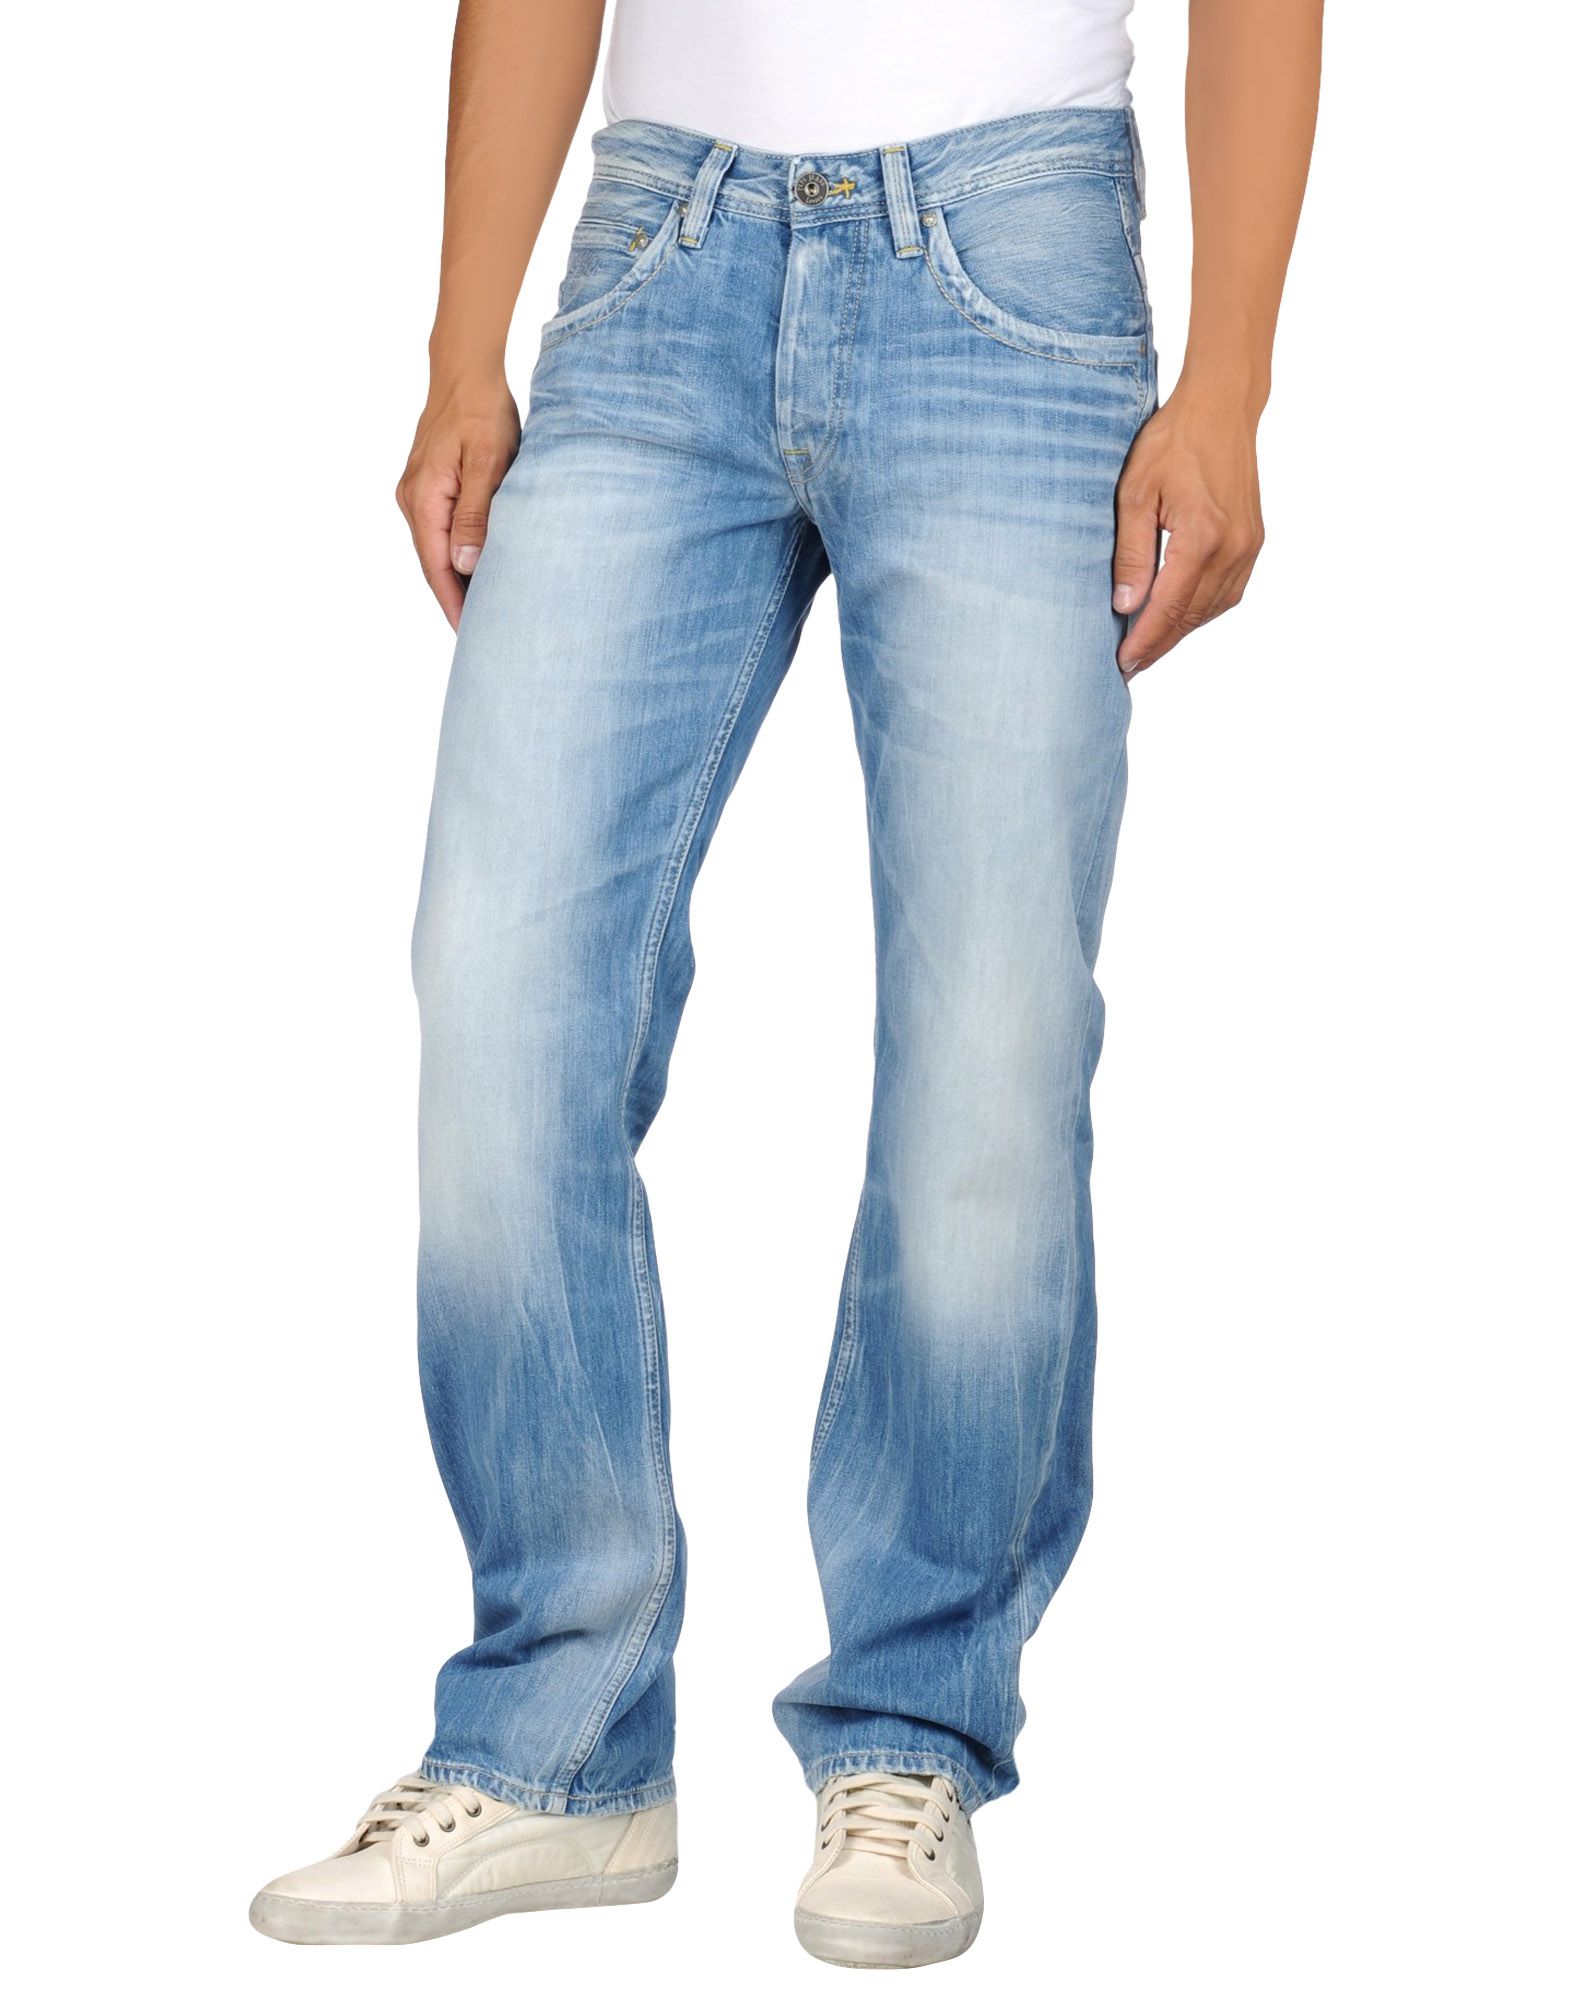 Foto pepe jeans pantalones vaqueros Hombre Azul marino foto 579617